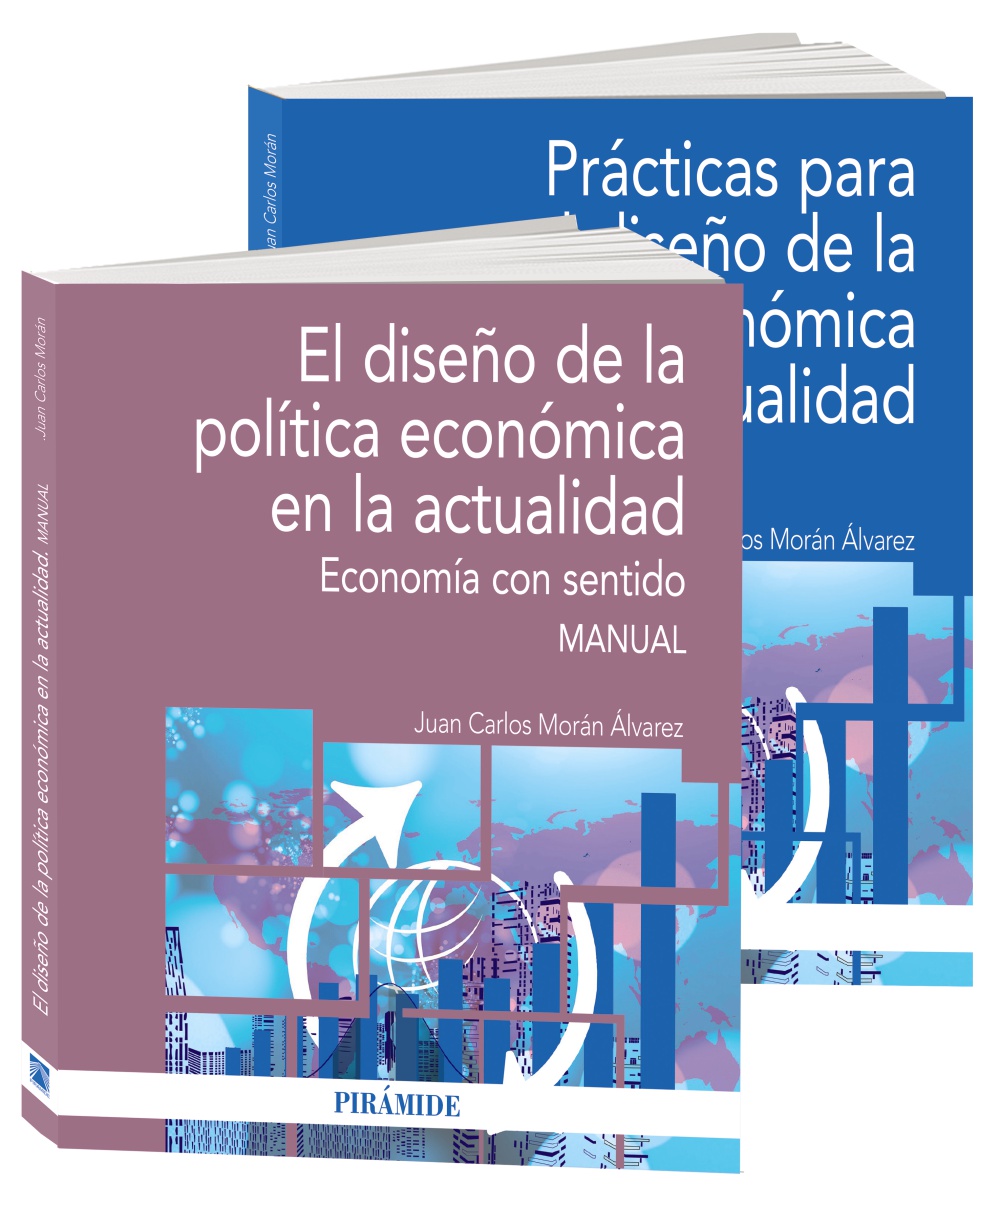 El diseño de la Política económica en la actualidad: Economía con sentido